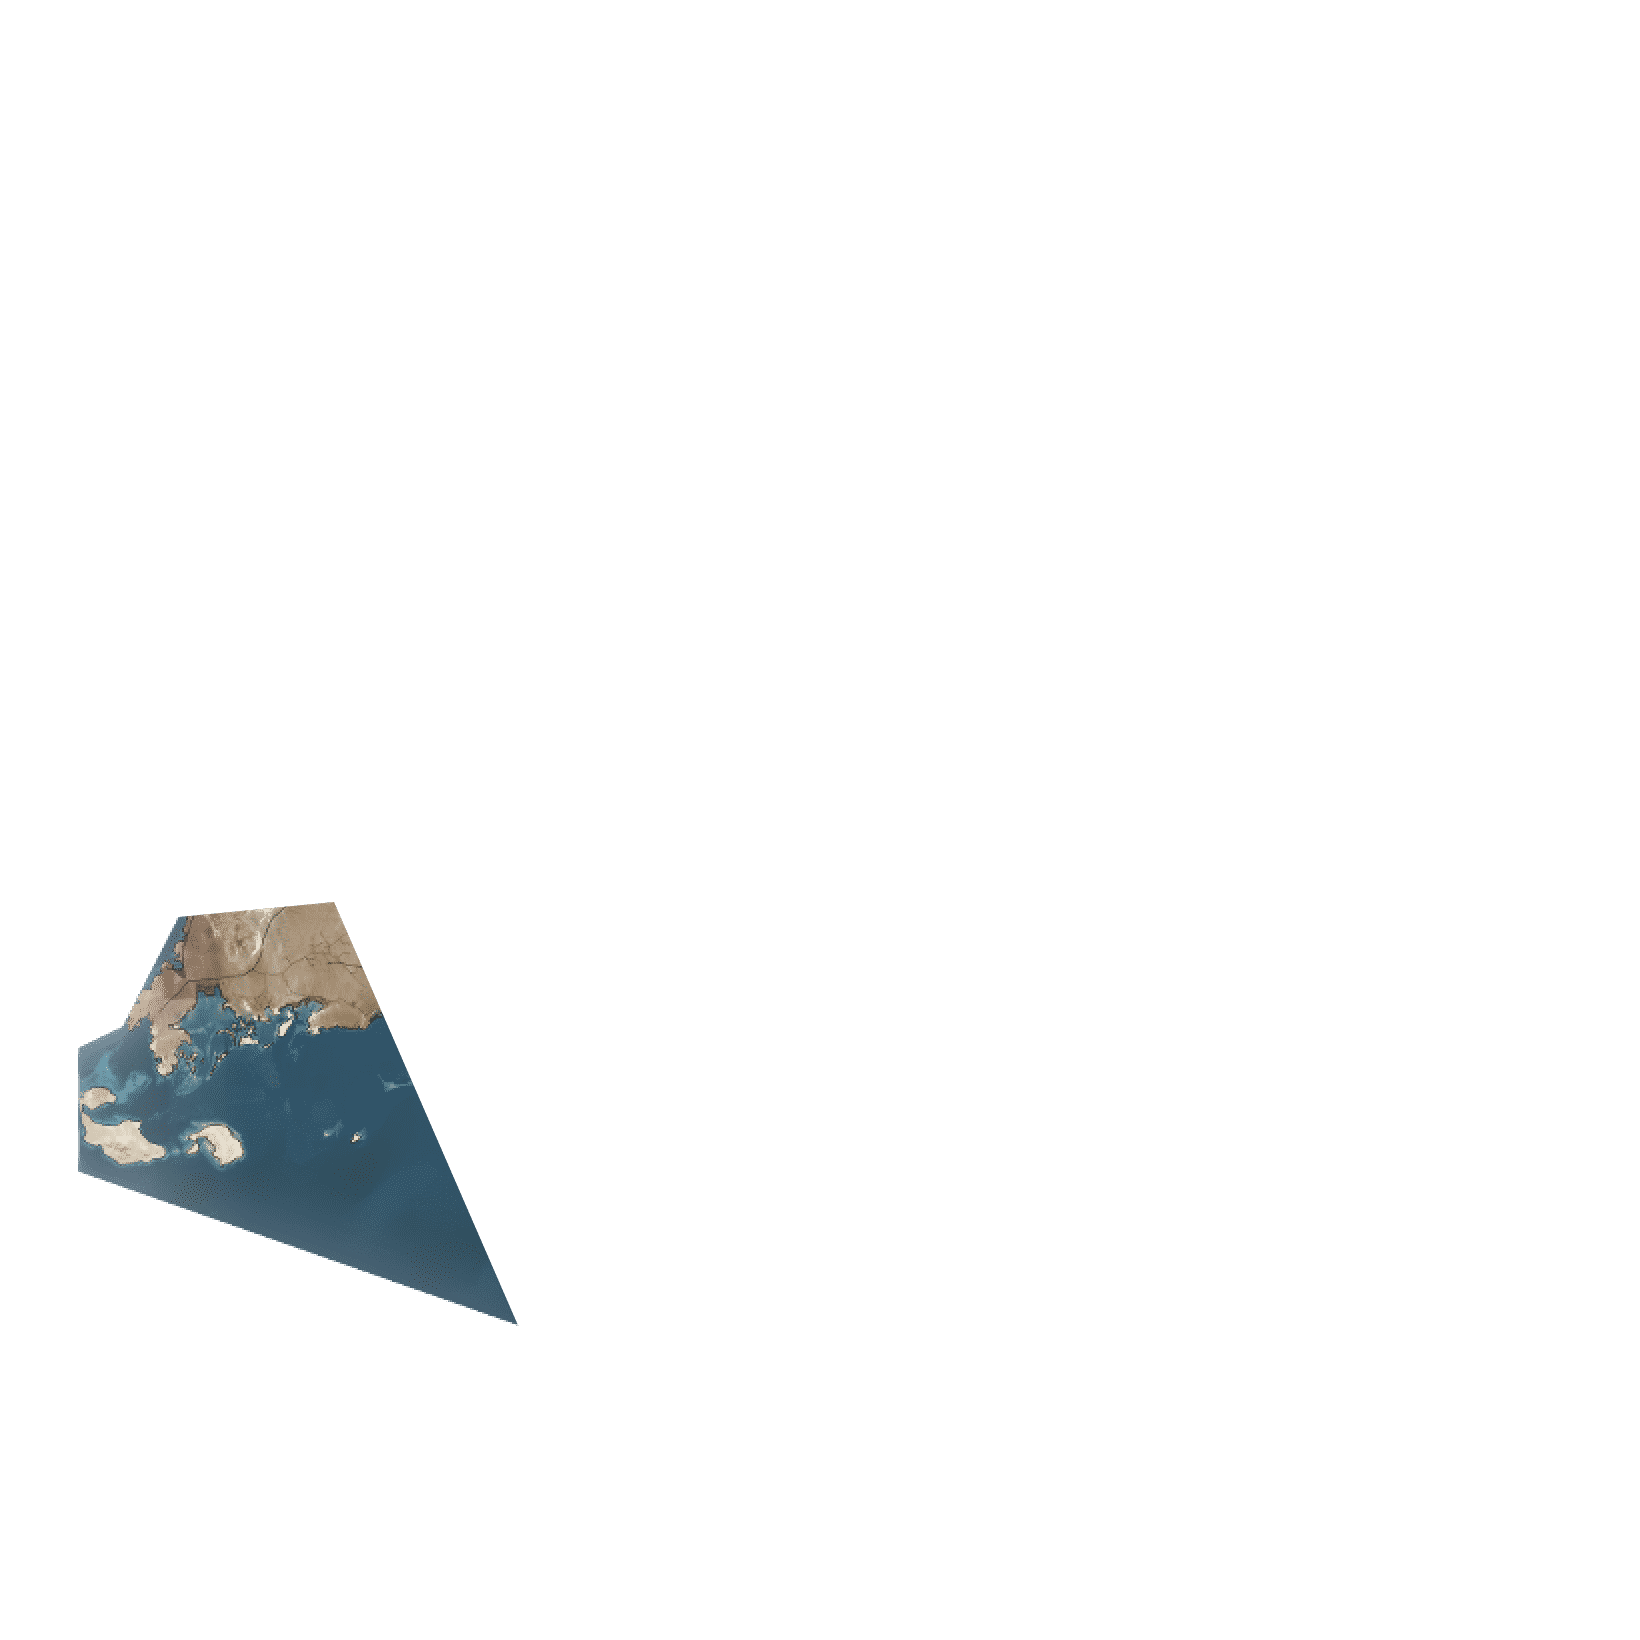 La paisible région désertique inférieure de NEOM vue d'un point de vue géographique